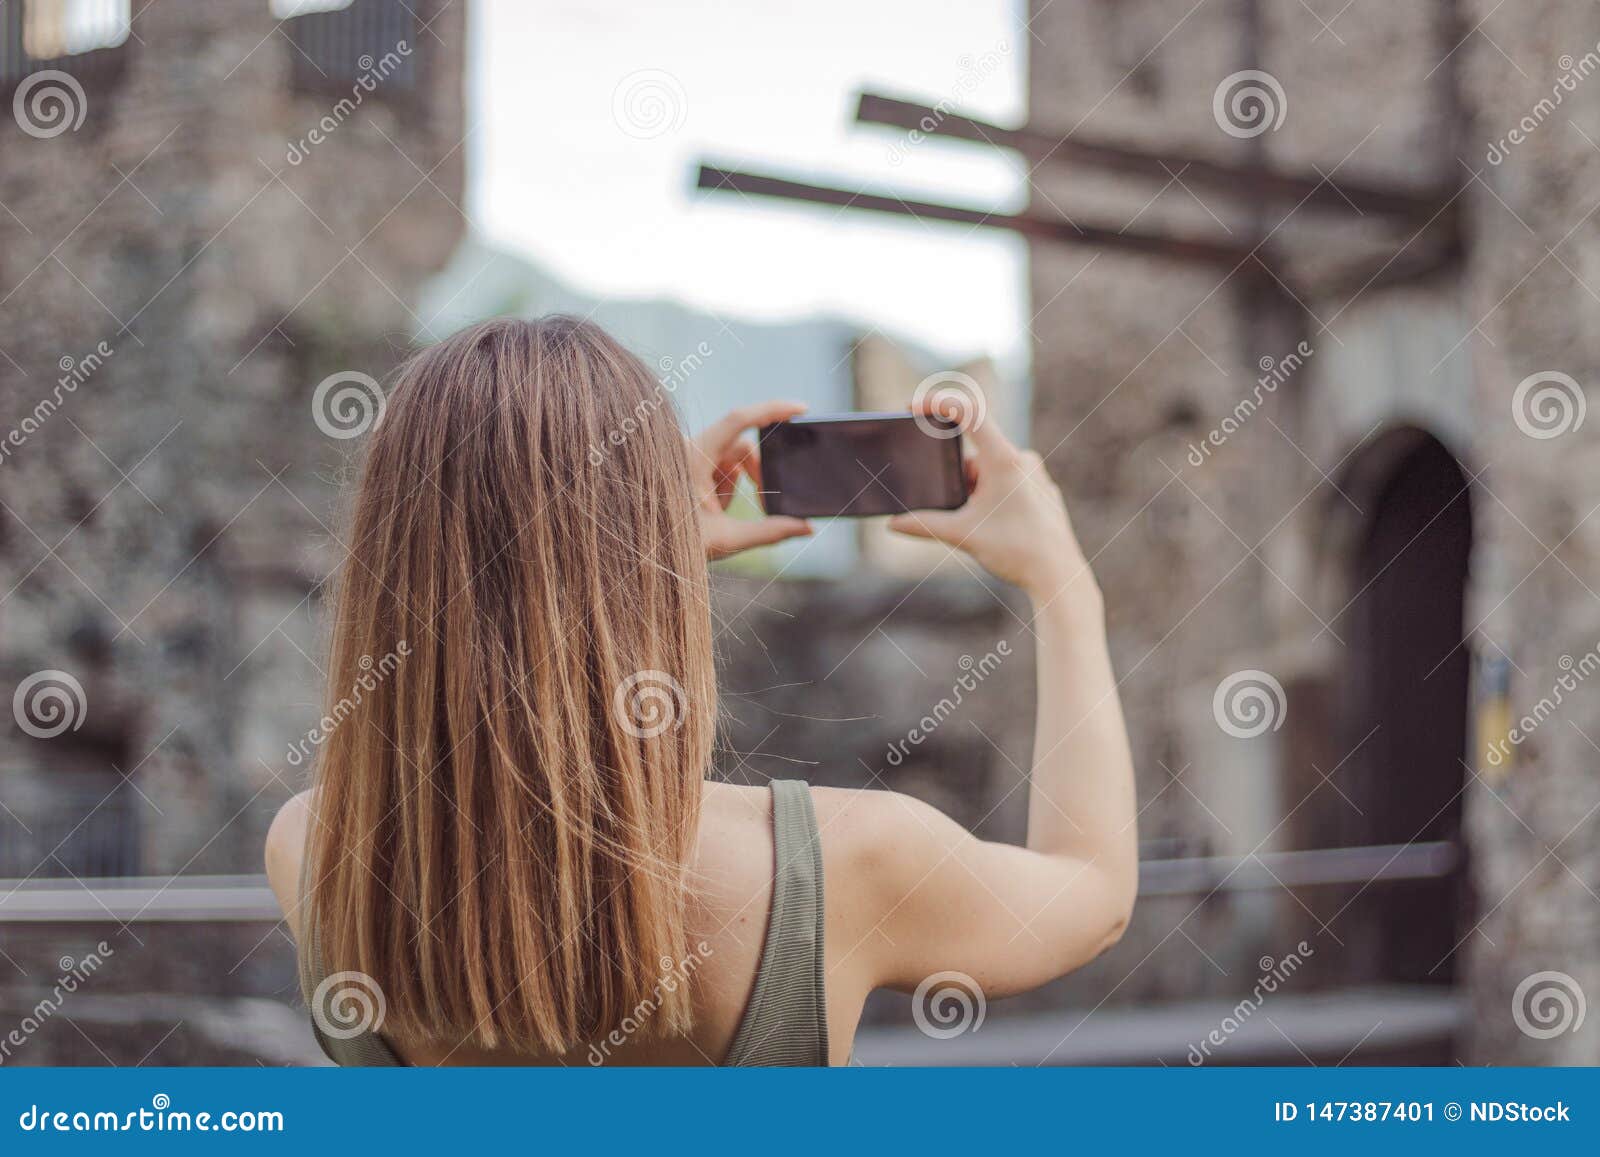 Молодая женщина фотографируется